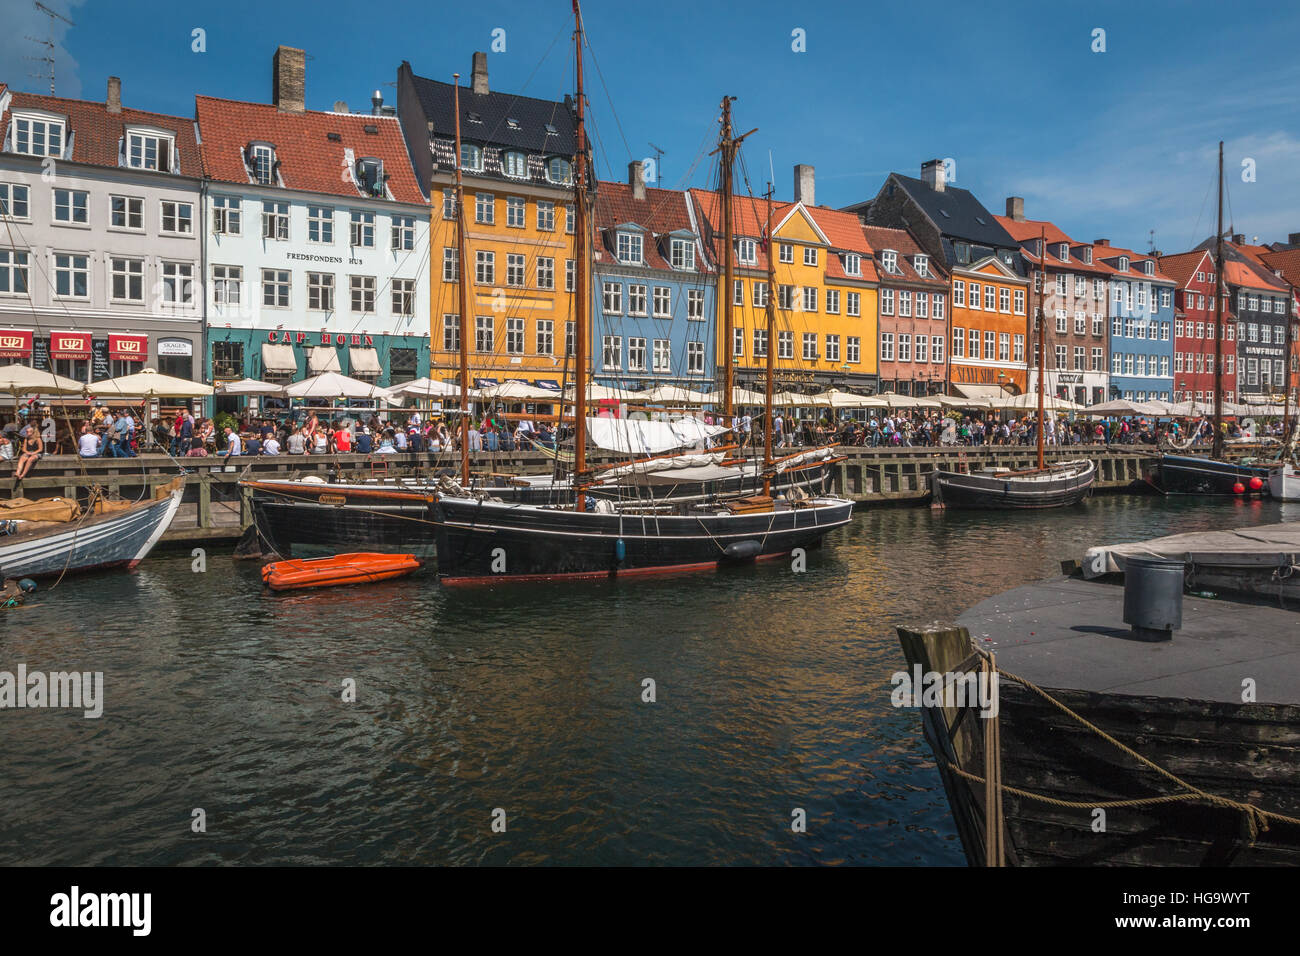 Nice view of Nyhavn in Copenhagen in Denmark Stock Photo